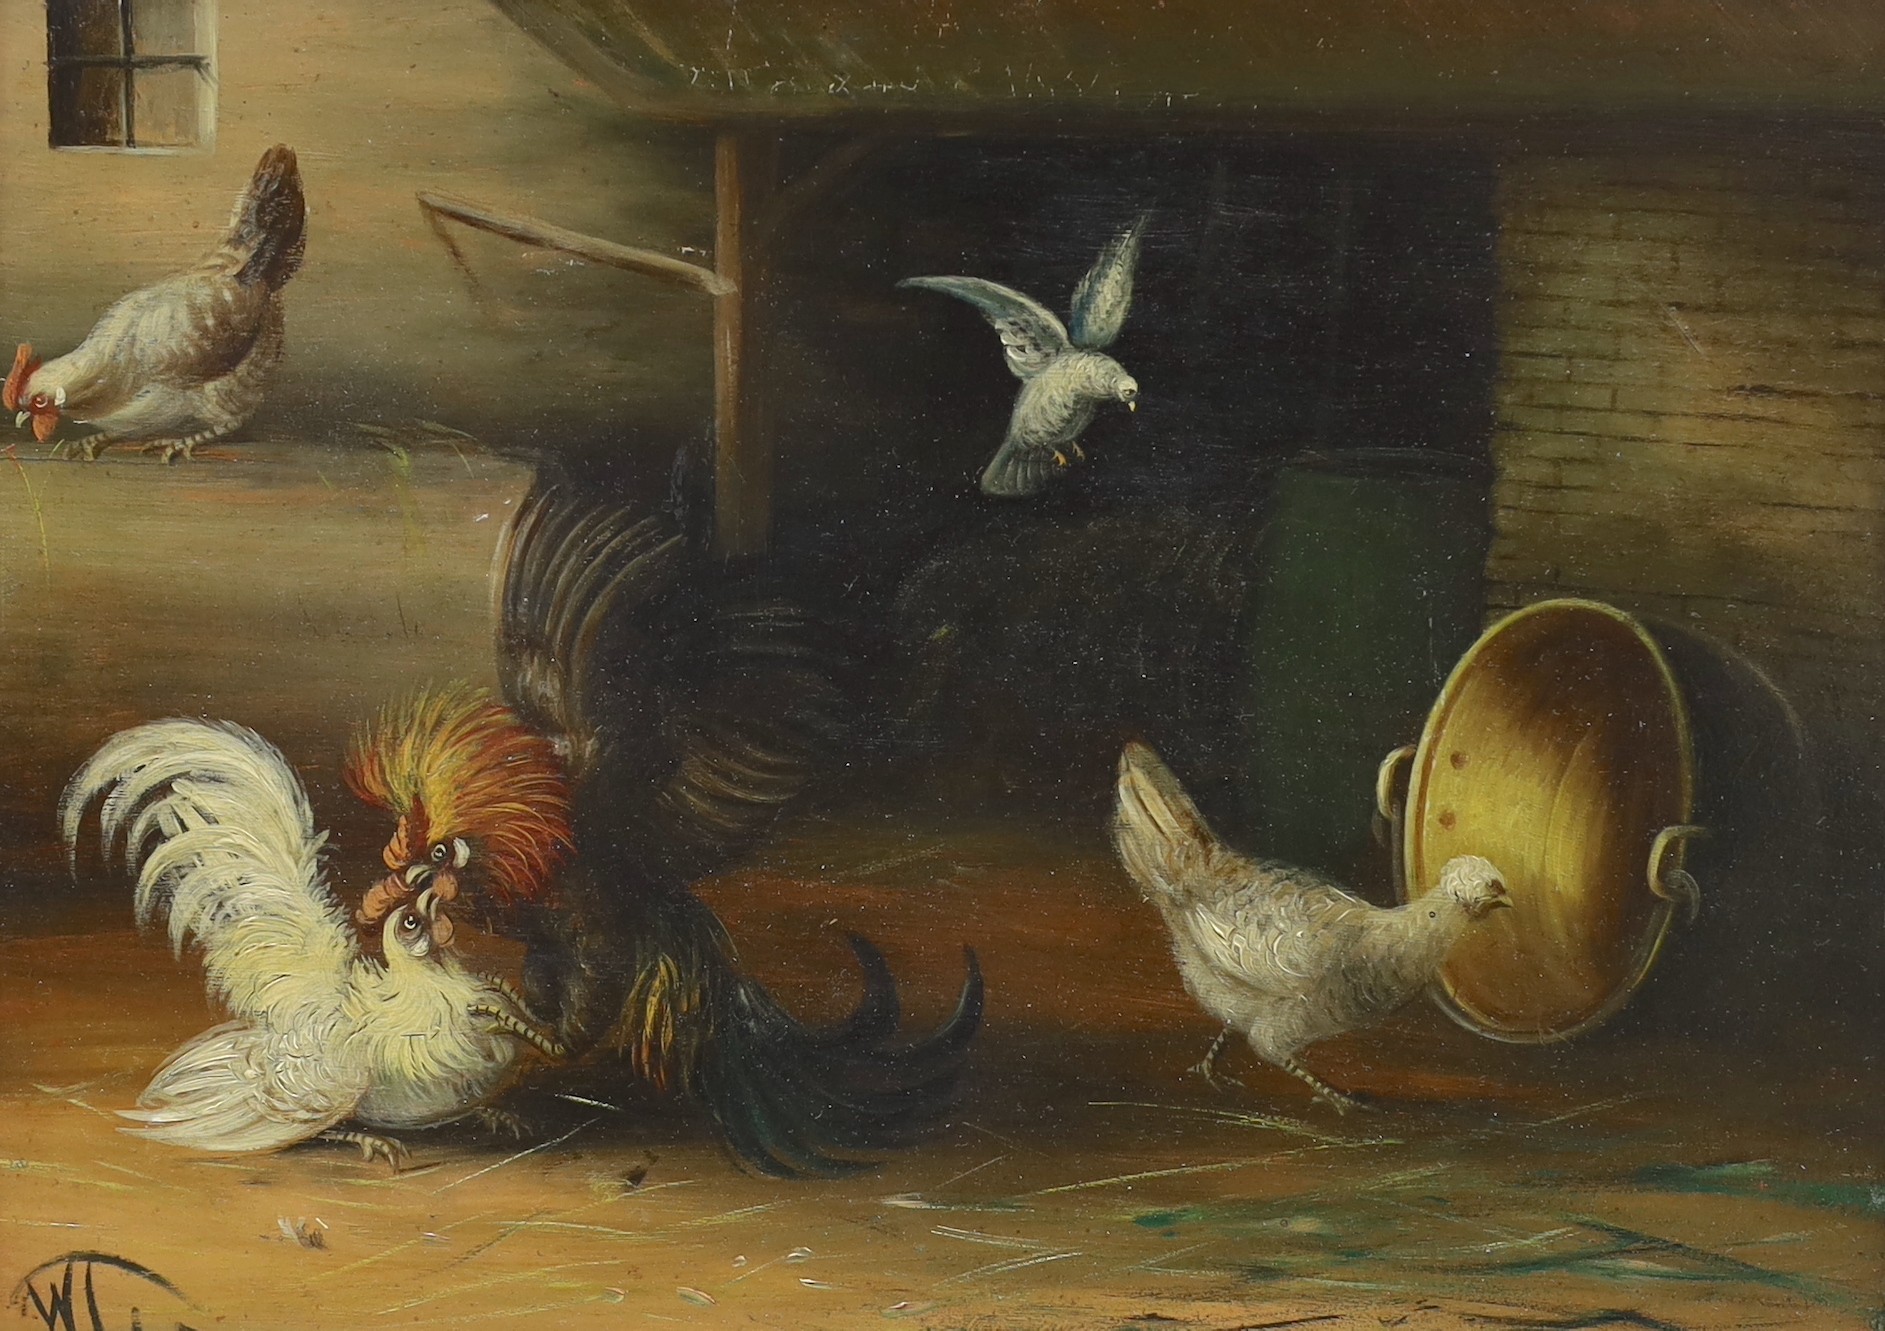 Wilhelm Albertus Lammers (1857-1913), pair of oils on wooden panels, Studies of poultry, monogrammed, 23 x 31cm